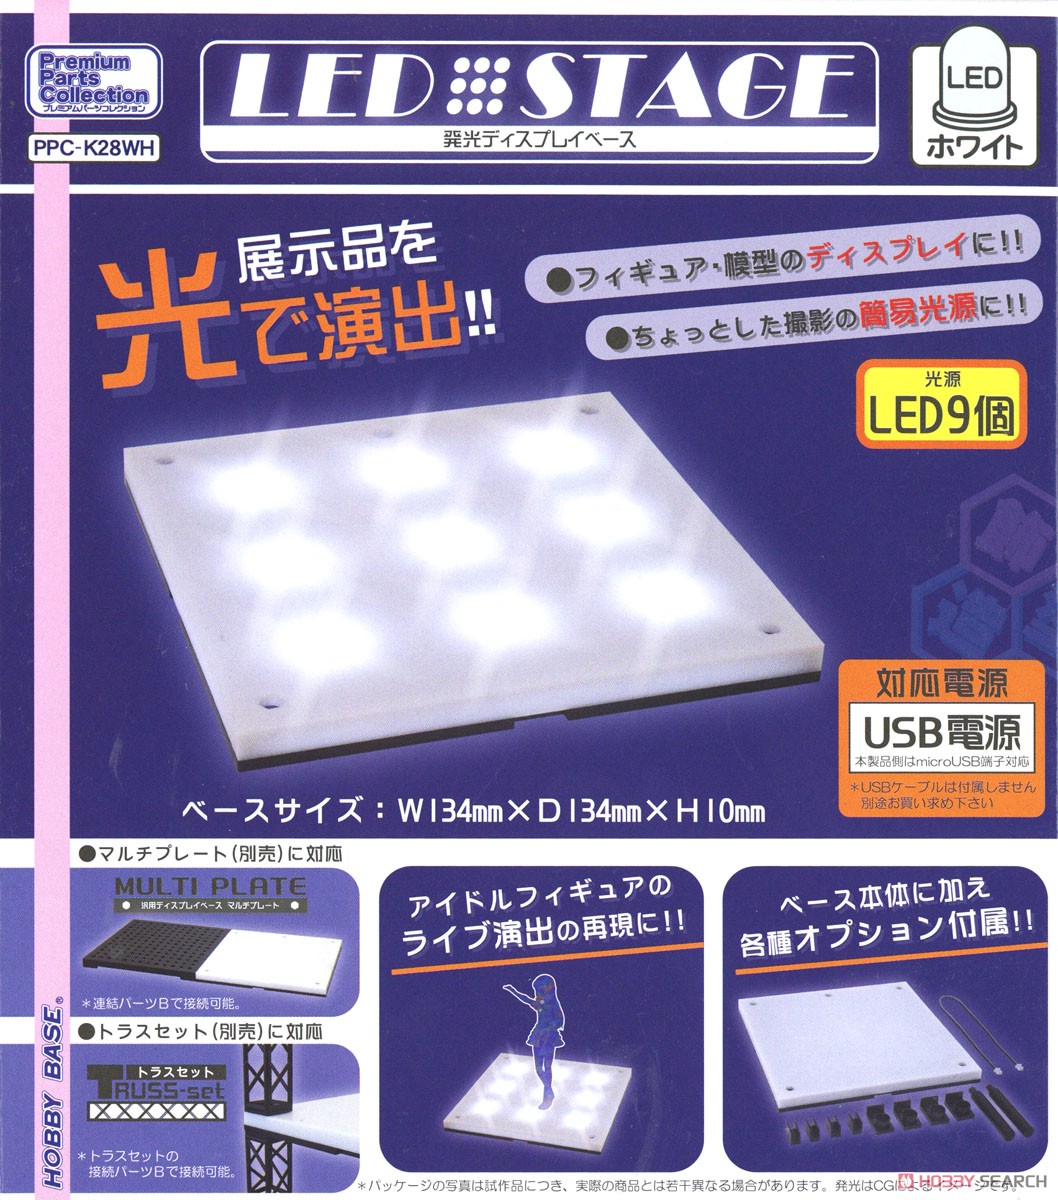 LEDステージ ホワイト (ディスプレイ) パッケージ1